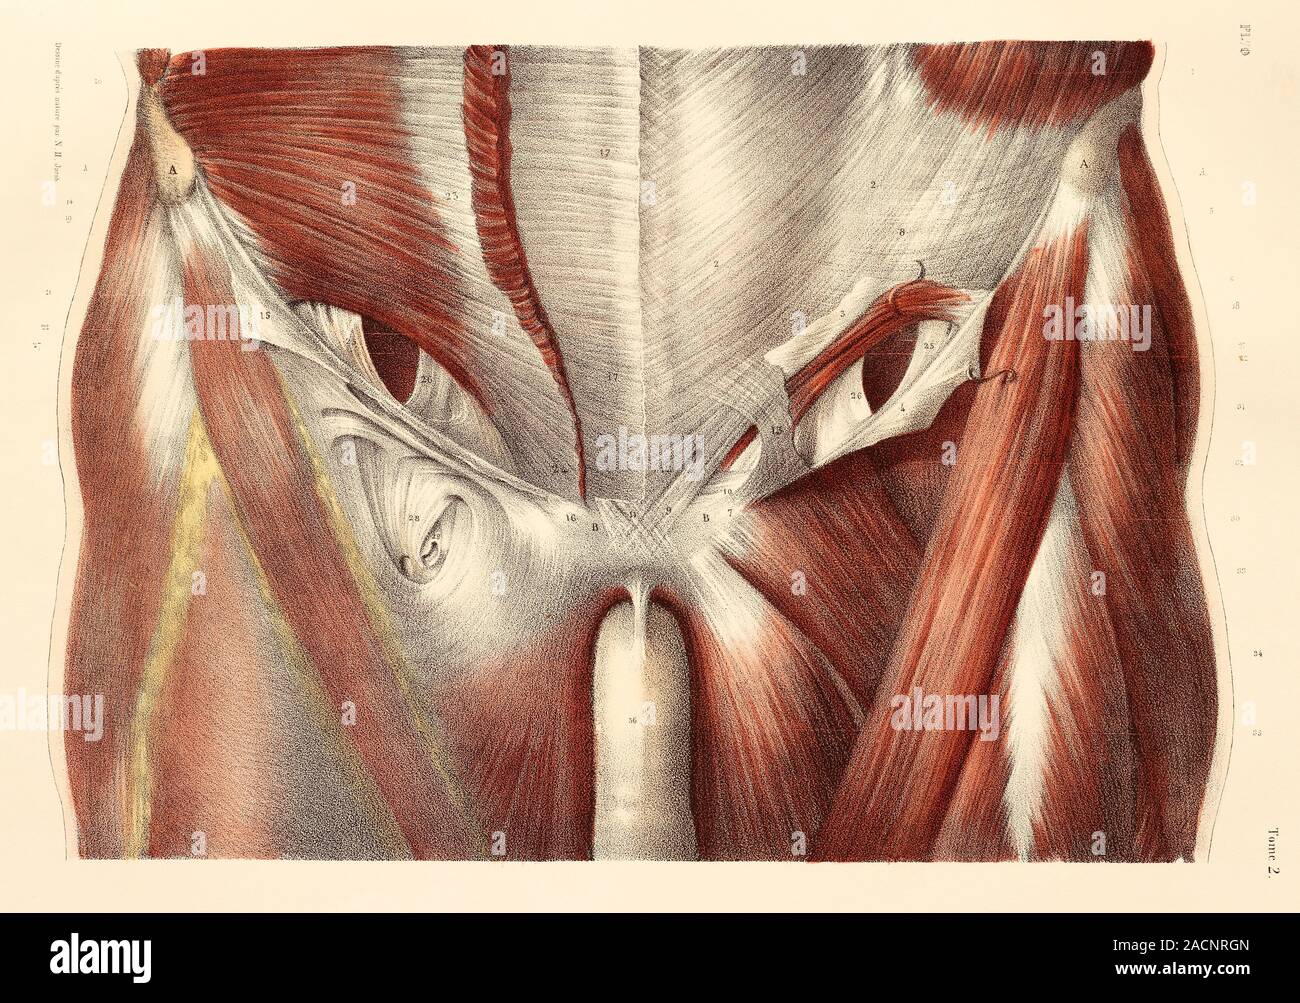 Leiste Muskeln. Muskeln der anterioren Wand des unteren (Leiste) Region der  Amtsleitung, mit einer Studie über den Leistenkanal. Diese anatomische  Artwork ist p Stockfotografie - Alamy, leiste 